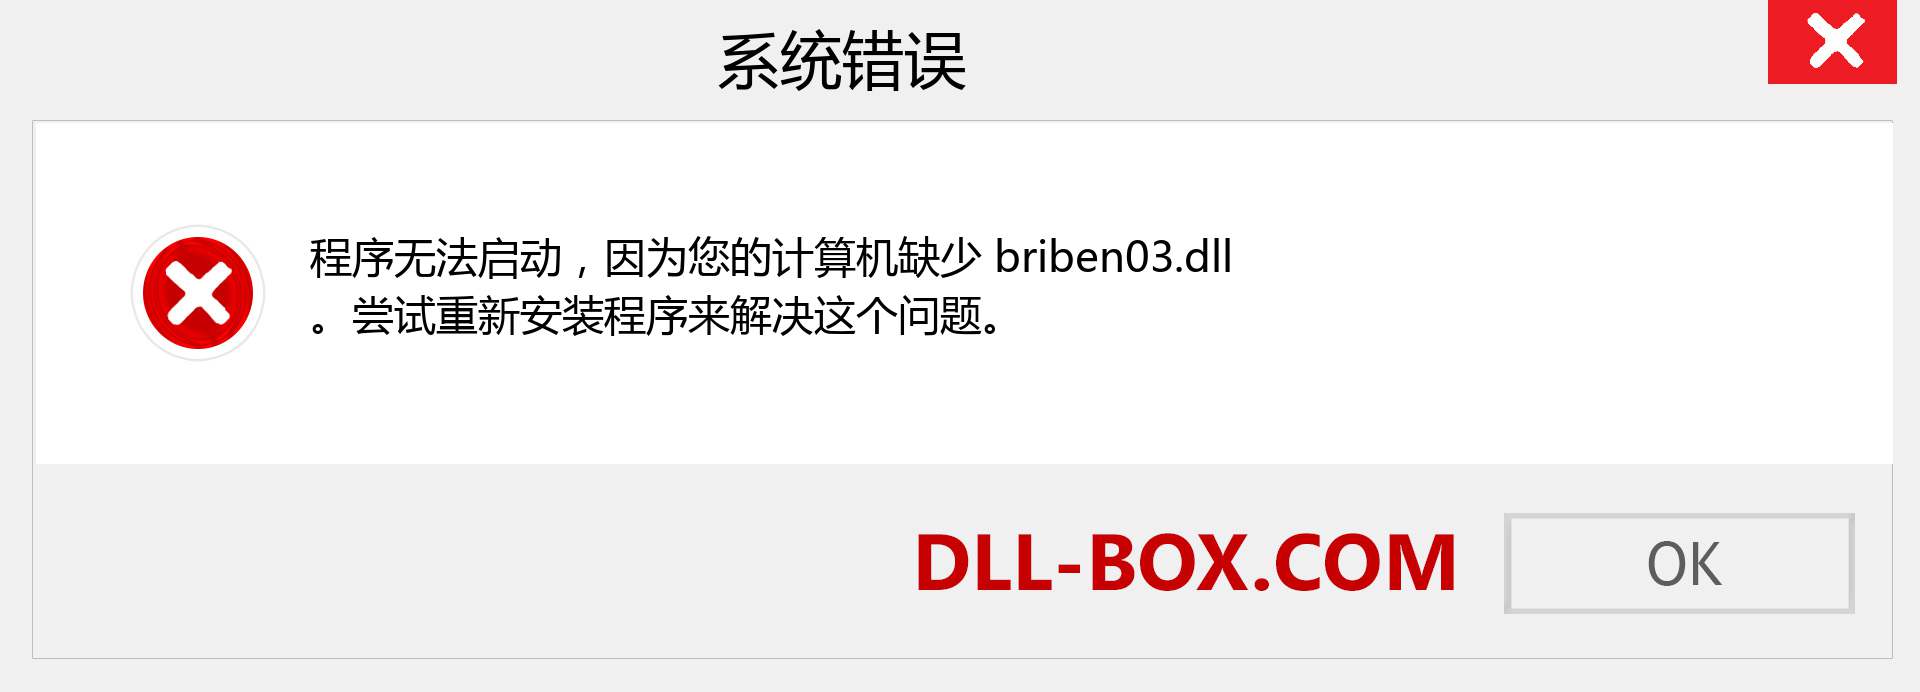 briben03.dll 文件丢失？。 适用于 Windows 7、8、10 的下载 - 修复 Windows、照片、图像上的 briben03 dll 丢失错误